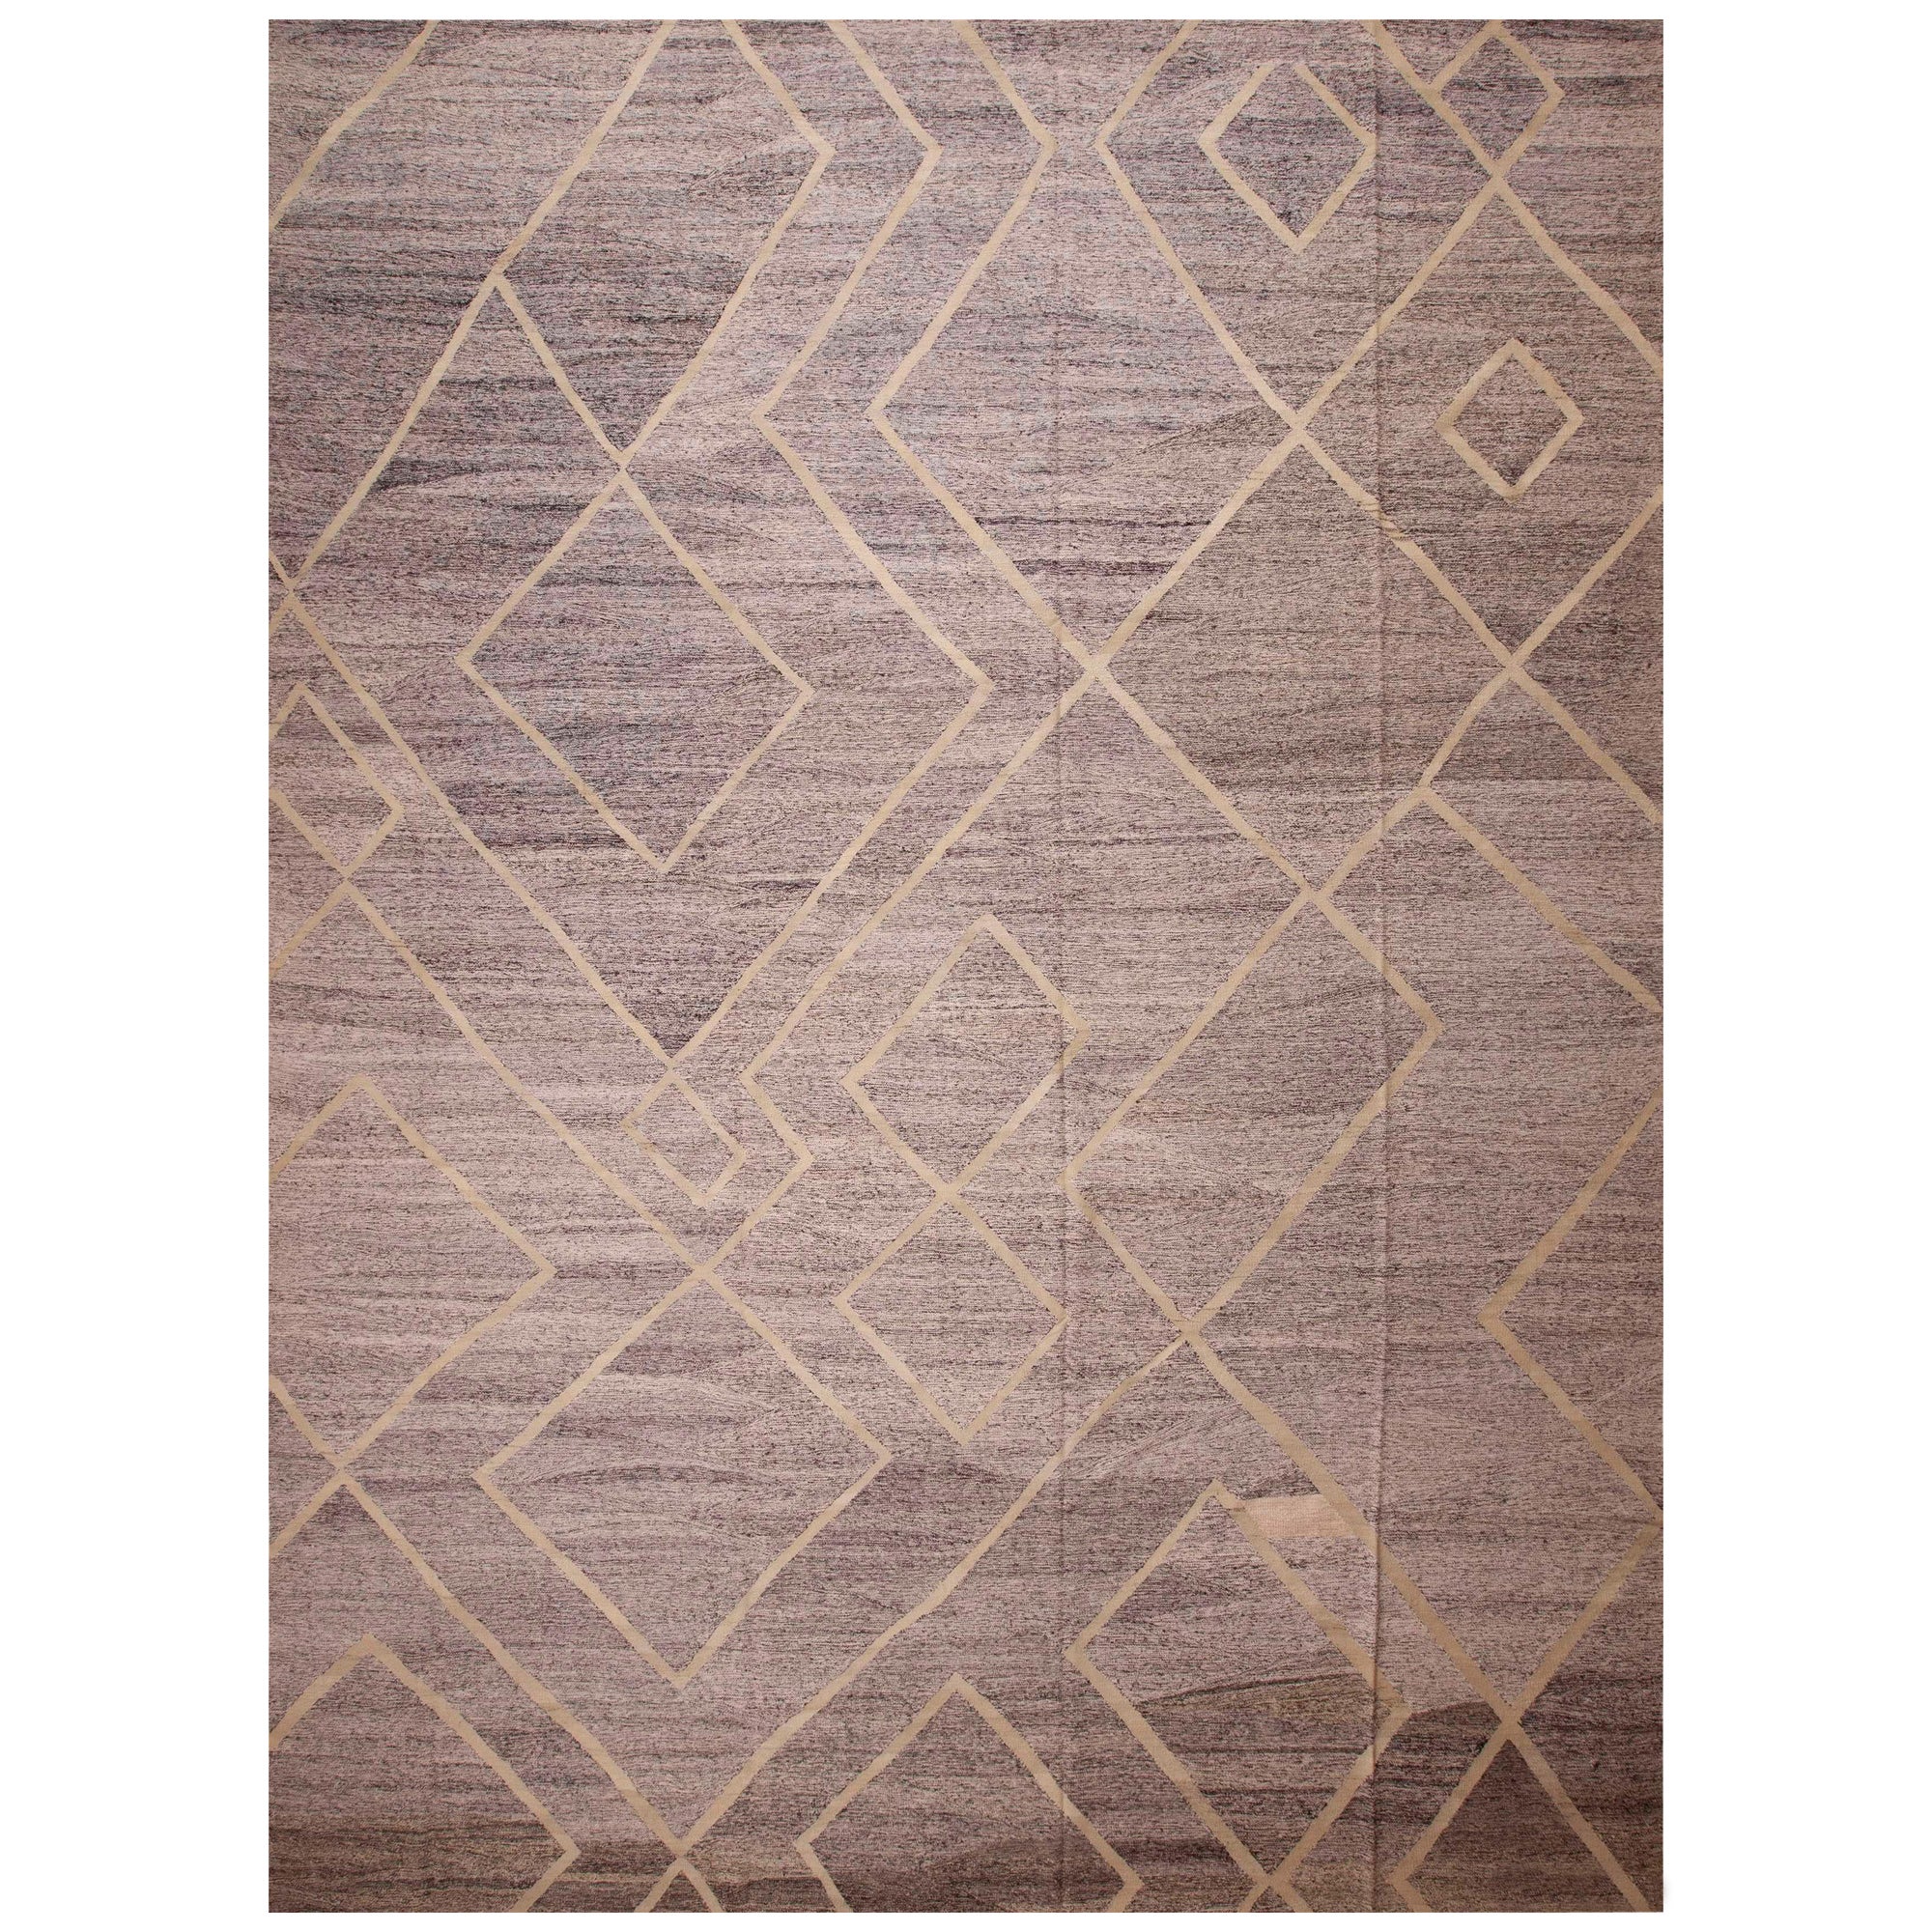 Collection Nazmiyal Grand tapis Kilim moderne tissé à plat 14'4" x 19'1"